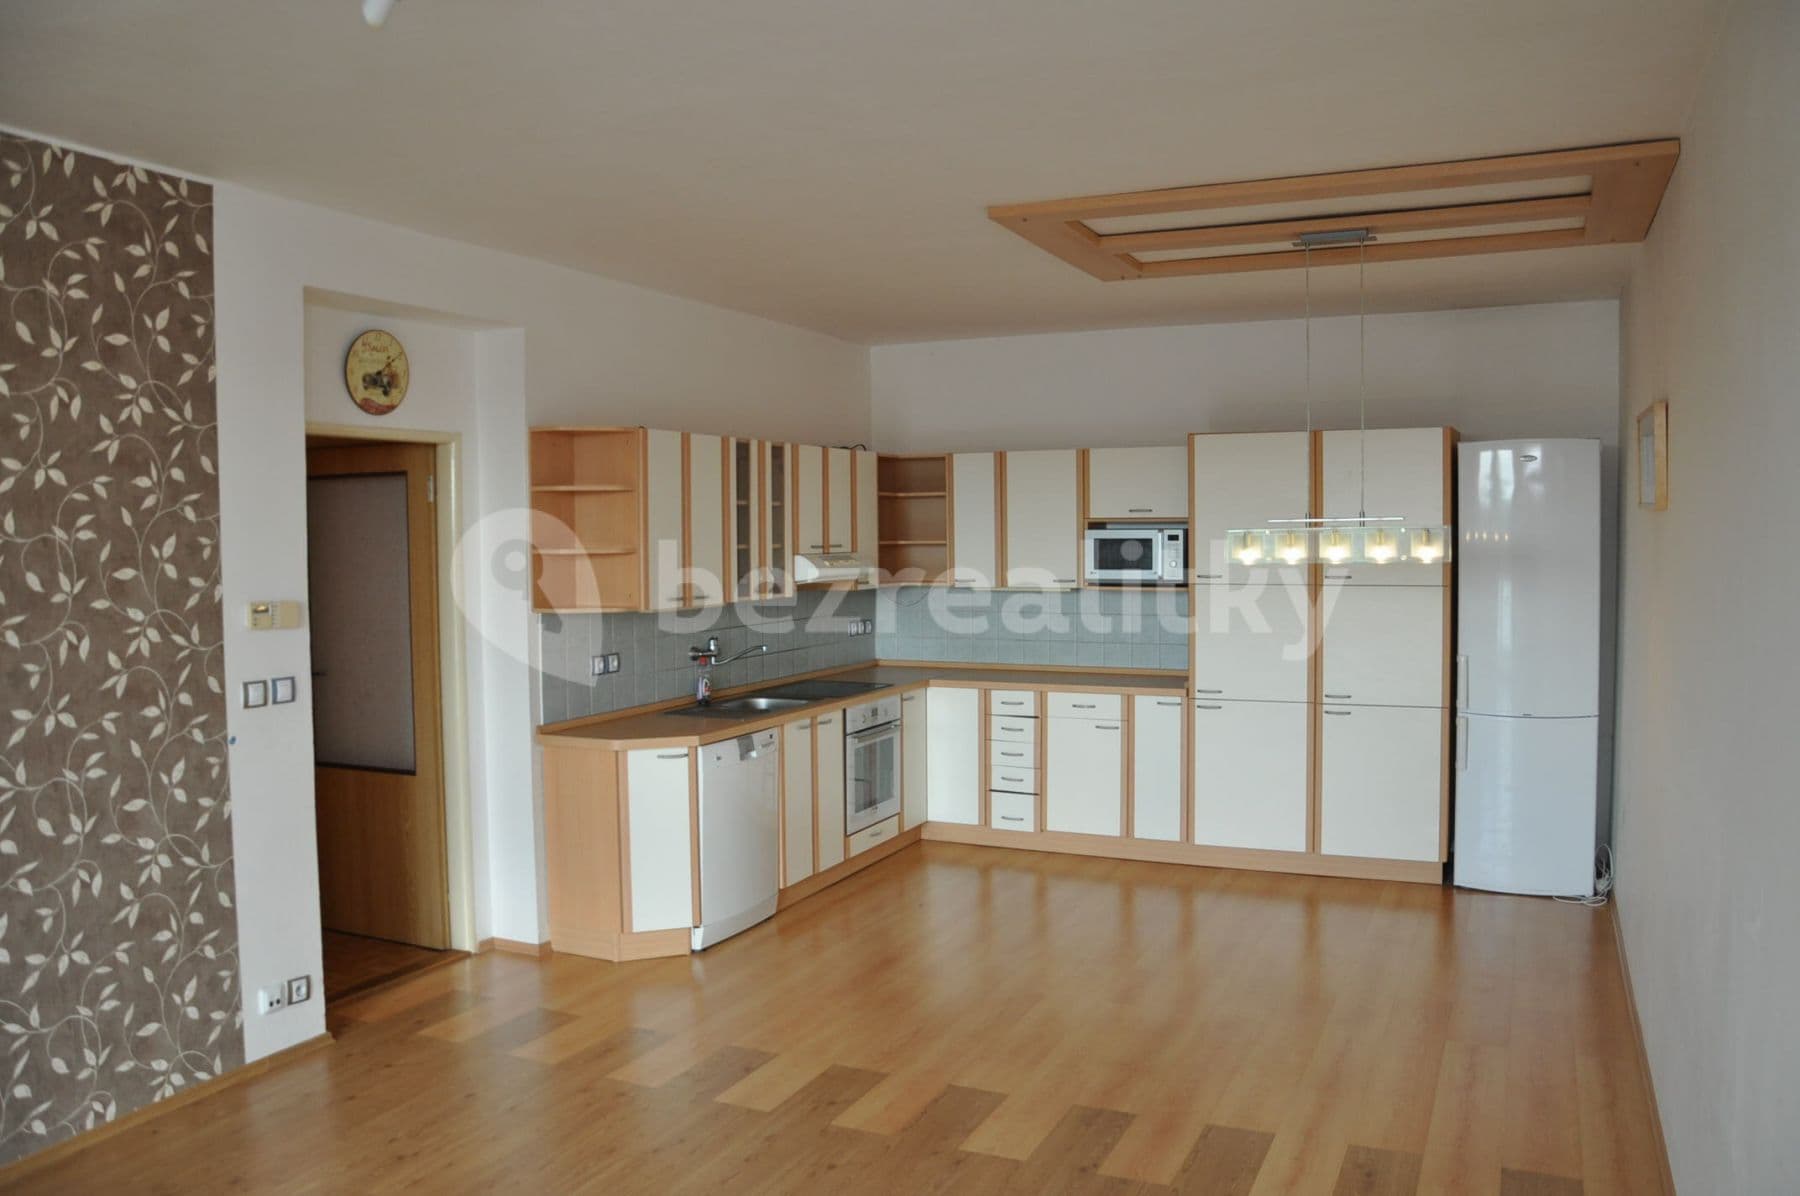 2 bedroom with open-plan kitchen flat to rent, 80 m², Volmanova, Čelákovice, Středočeský Region